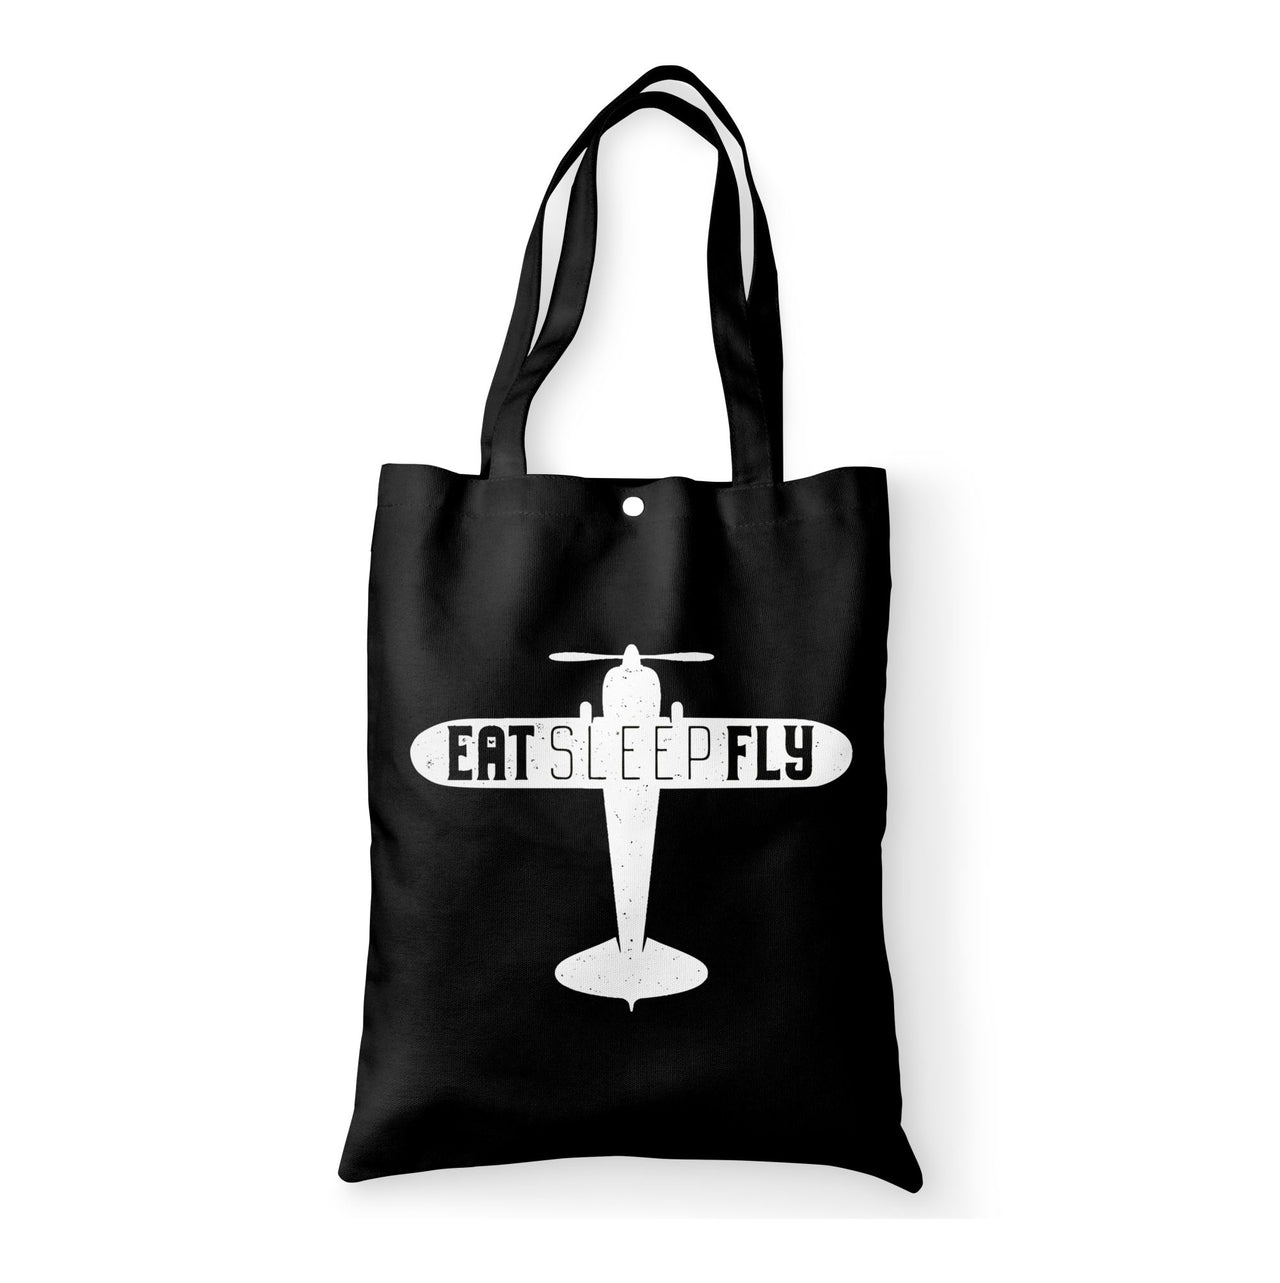 Eat Sleep Fly & Propeller Designed Tote Bags